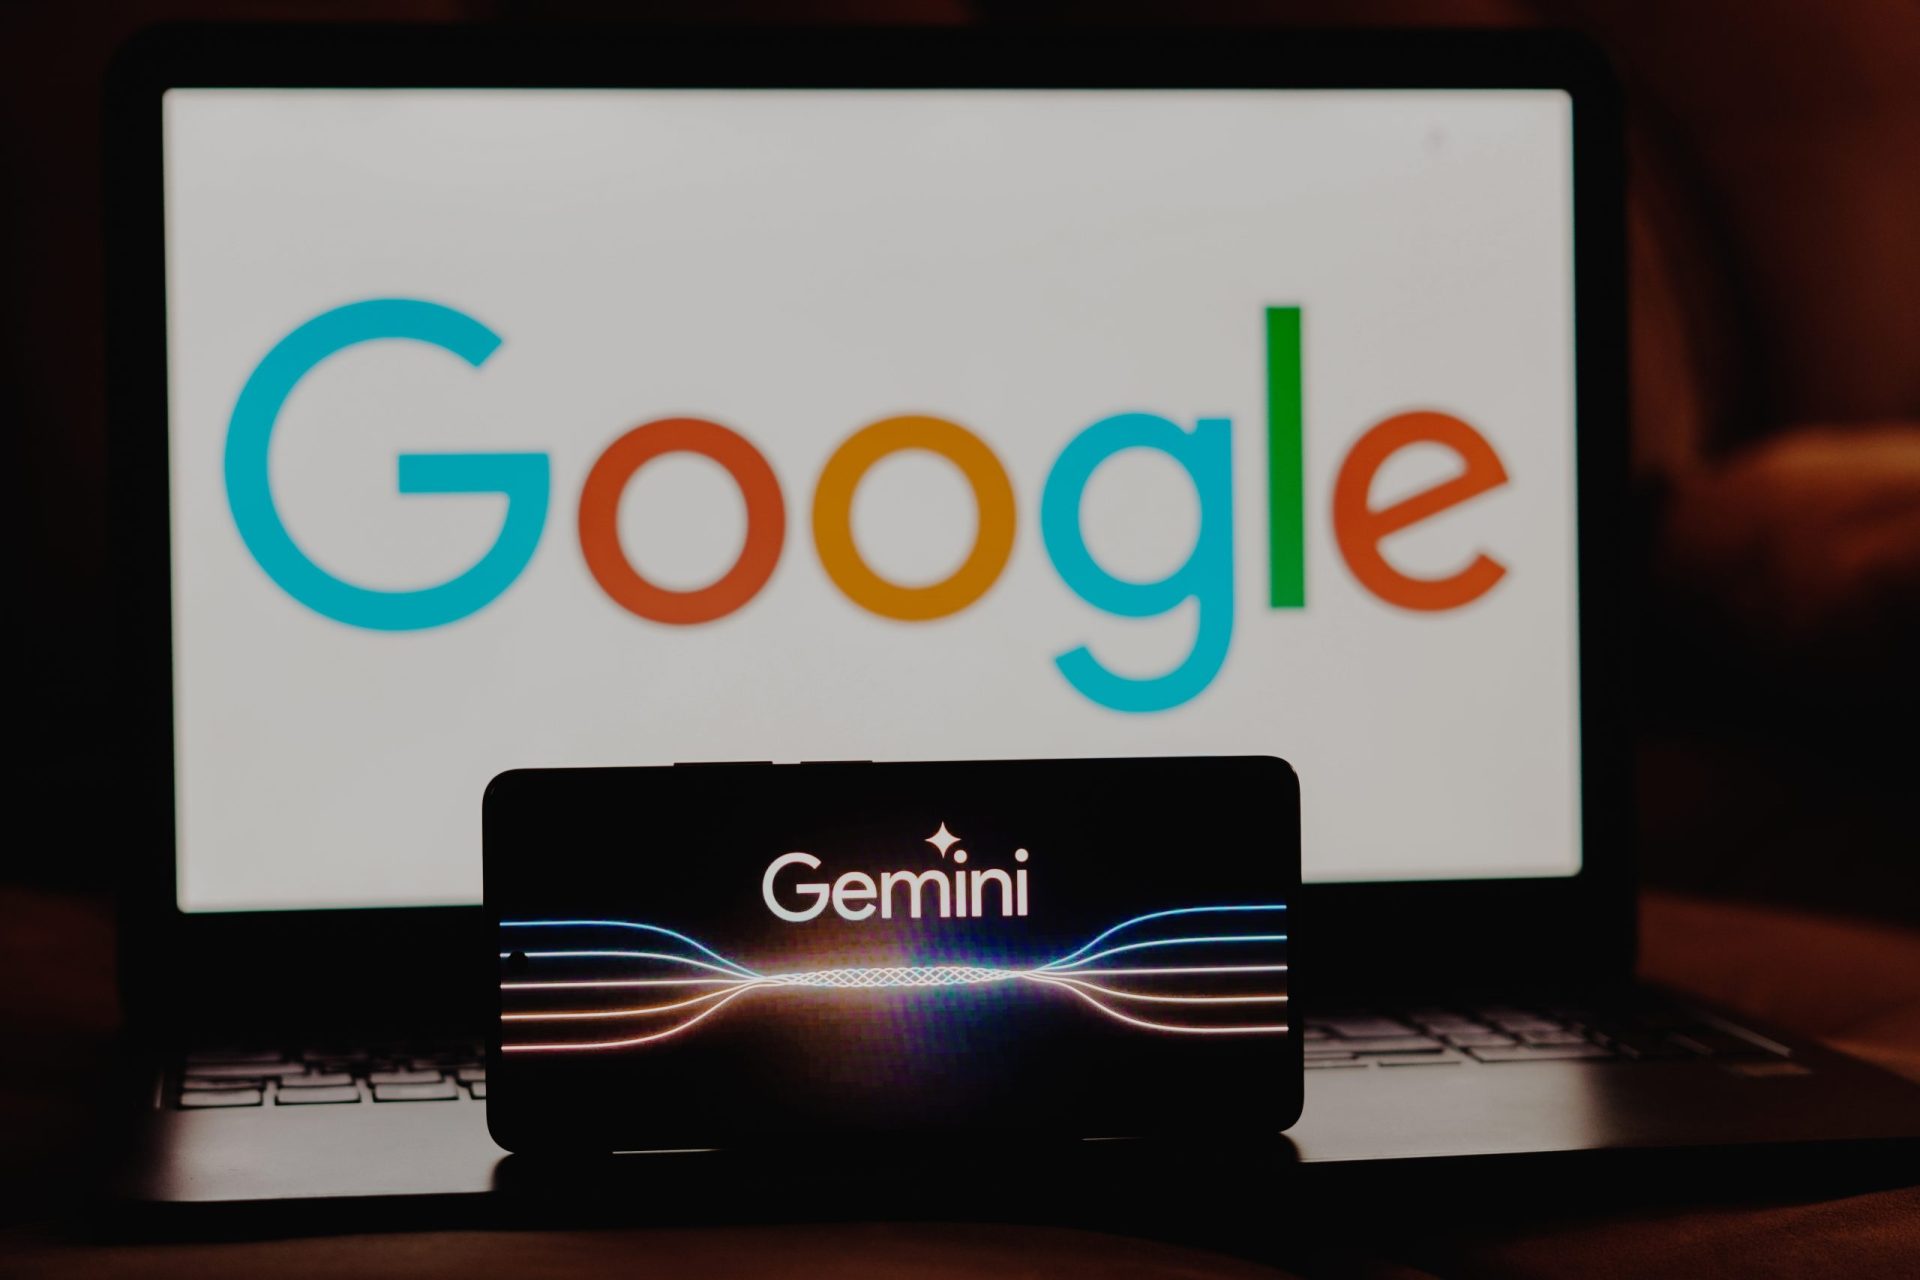 Modèle Gemini, un défi pour ChatGPT ou un embarras pour Google ?